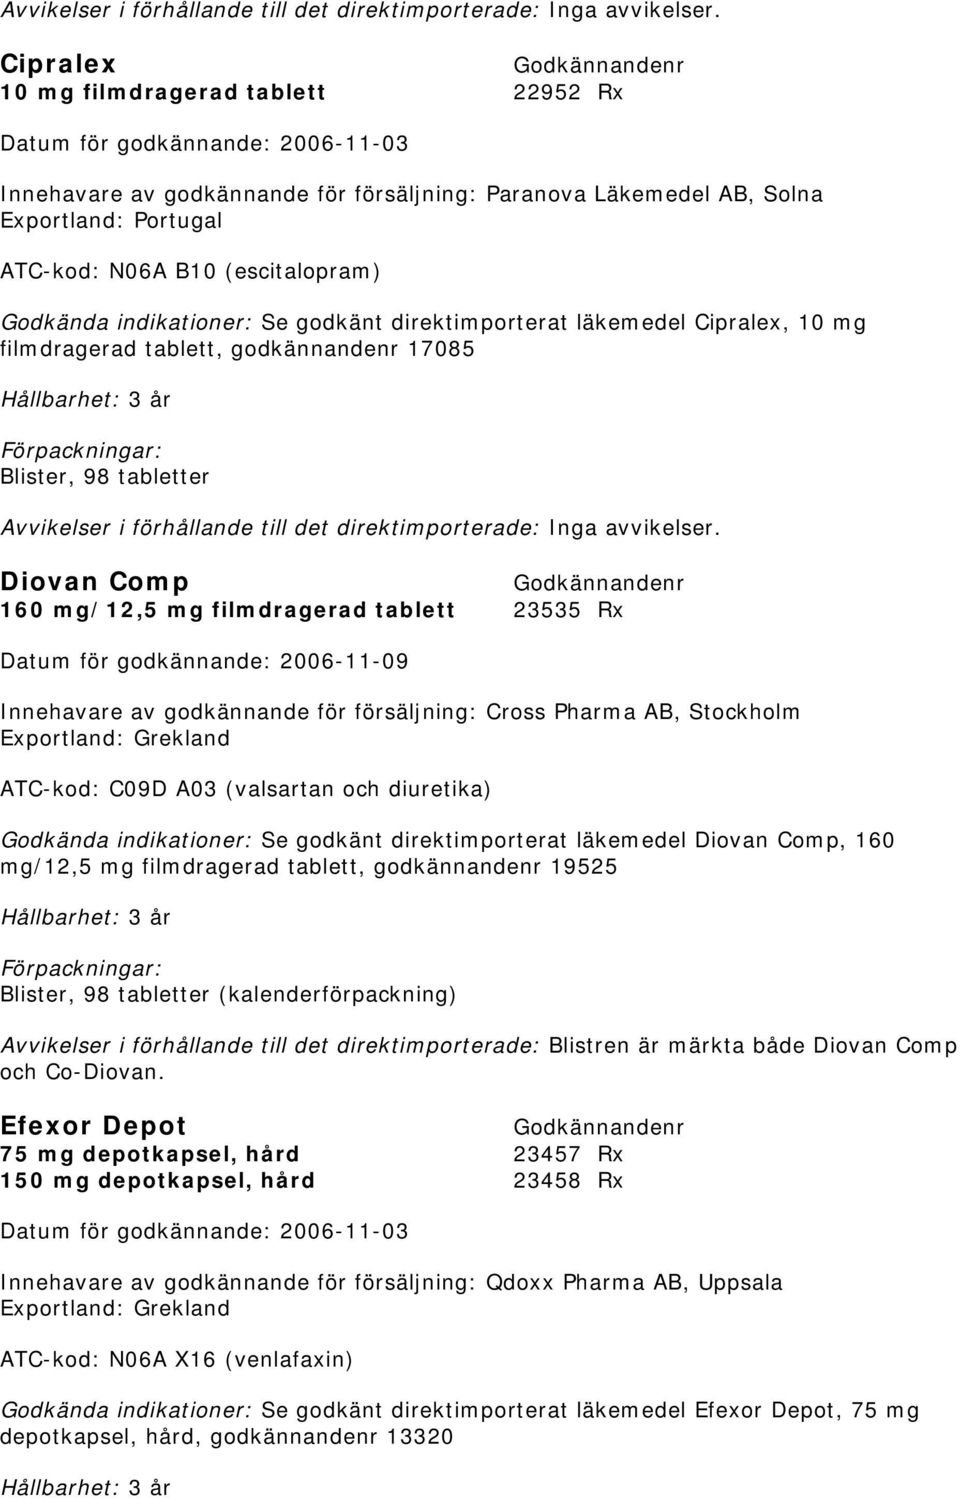 godkännandenr 17085  Diovan Comp 160 mg/12,5 mg filmdragerad tablett 23535 Rx Datum för godkännande: 2006-11-09 Innehavare av godkännande för försäljning: Cross Pharma AB, Stockholm Exportland: